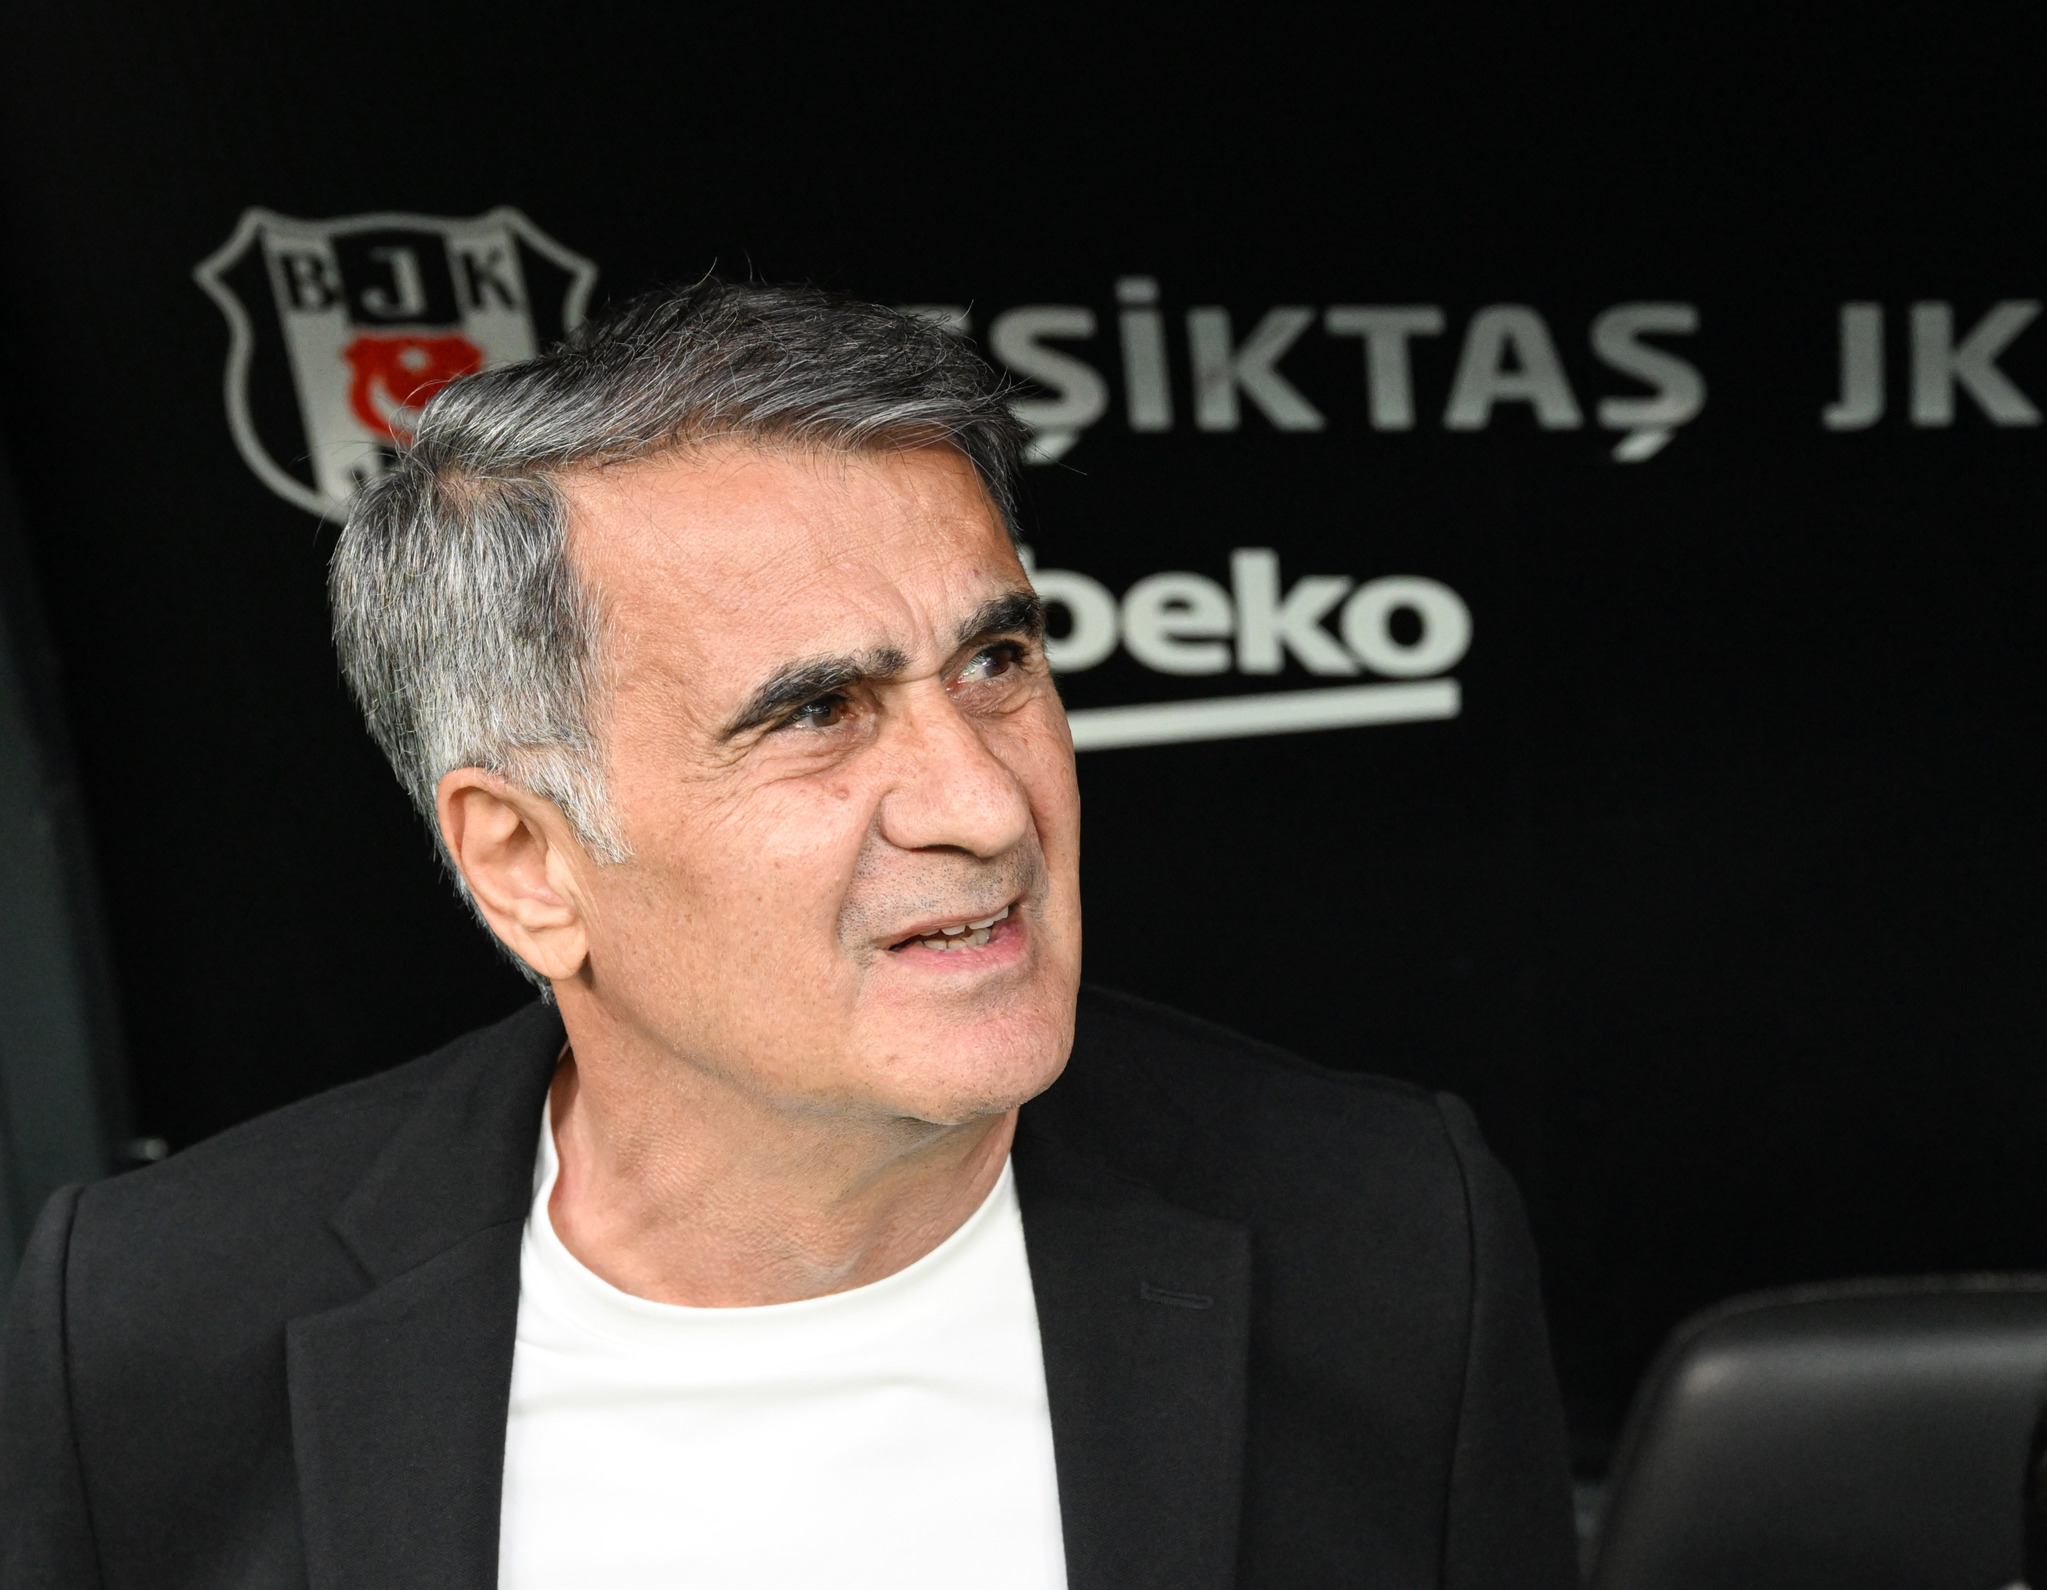 TRANSFER HABERİ: Beşiktaş’ta 2. ayrılık! Atiba’dan sonra o da gidiyor